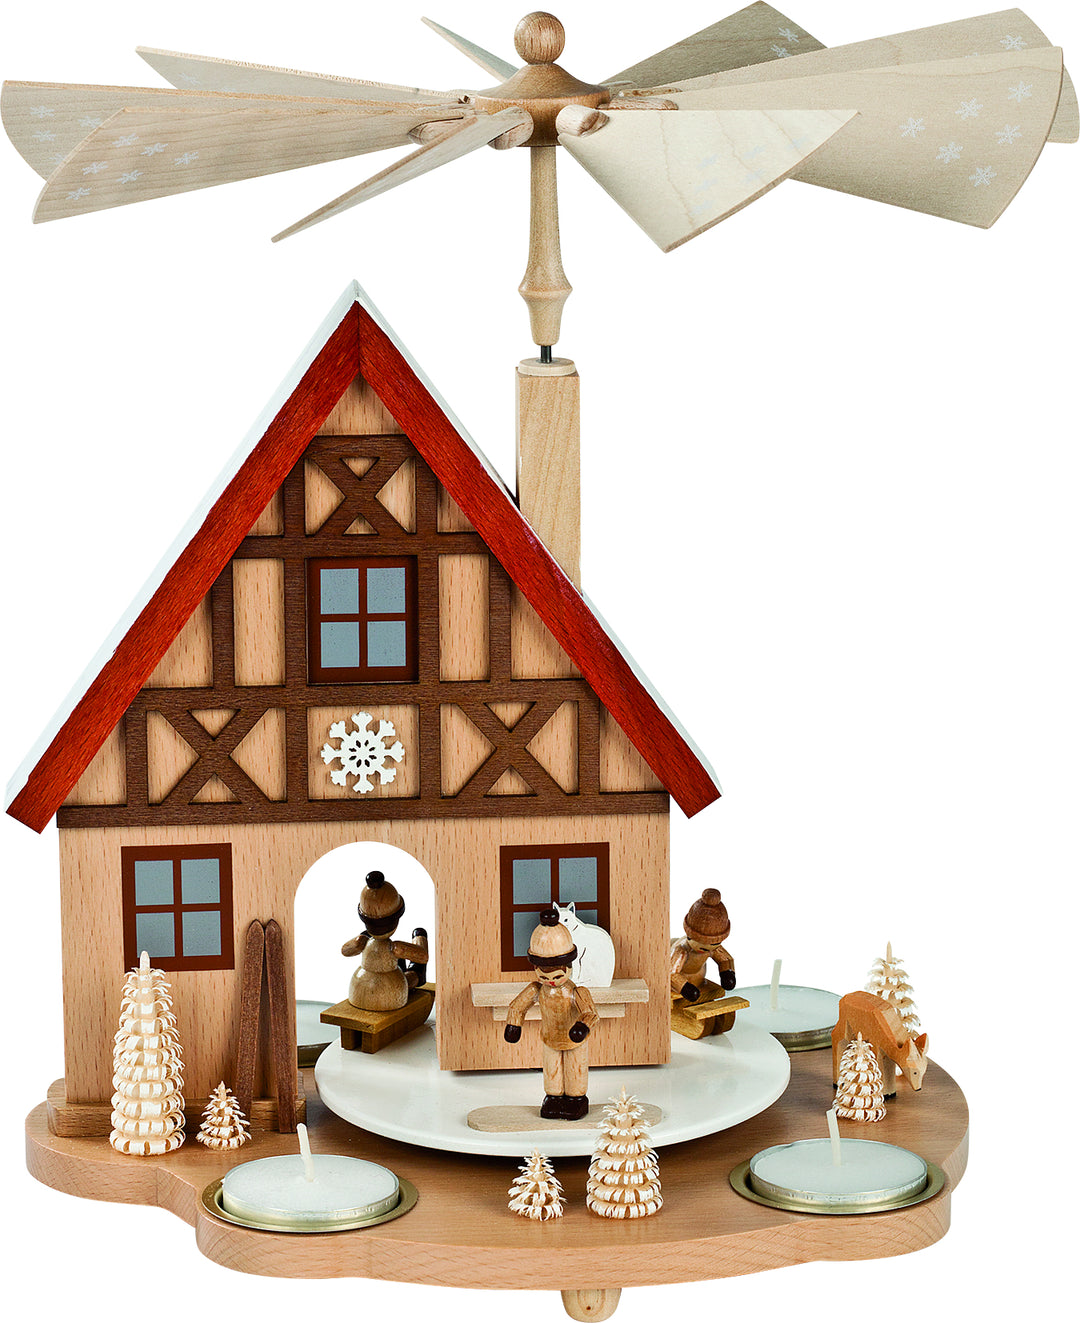 Glässer Népművészet 'Asztal piramis ház téli gyerekek' 29cm